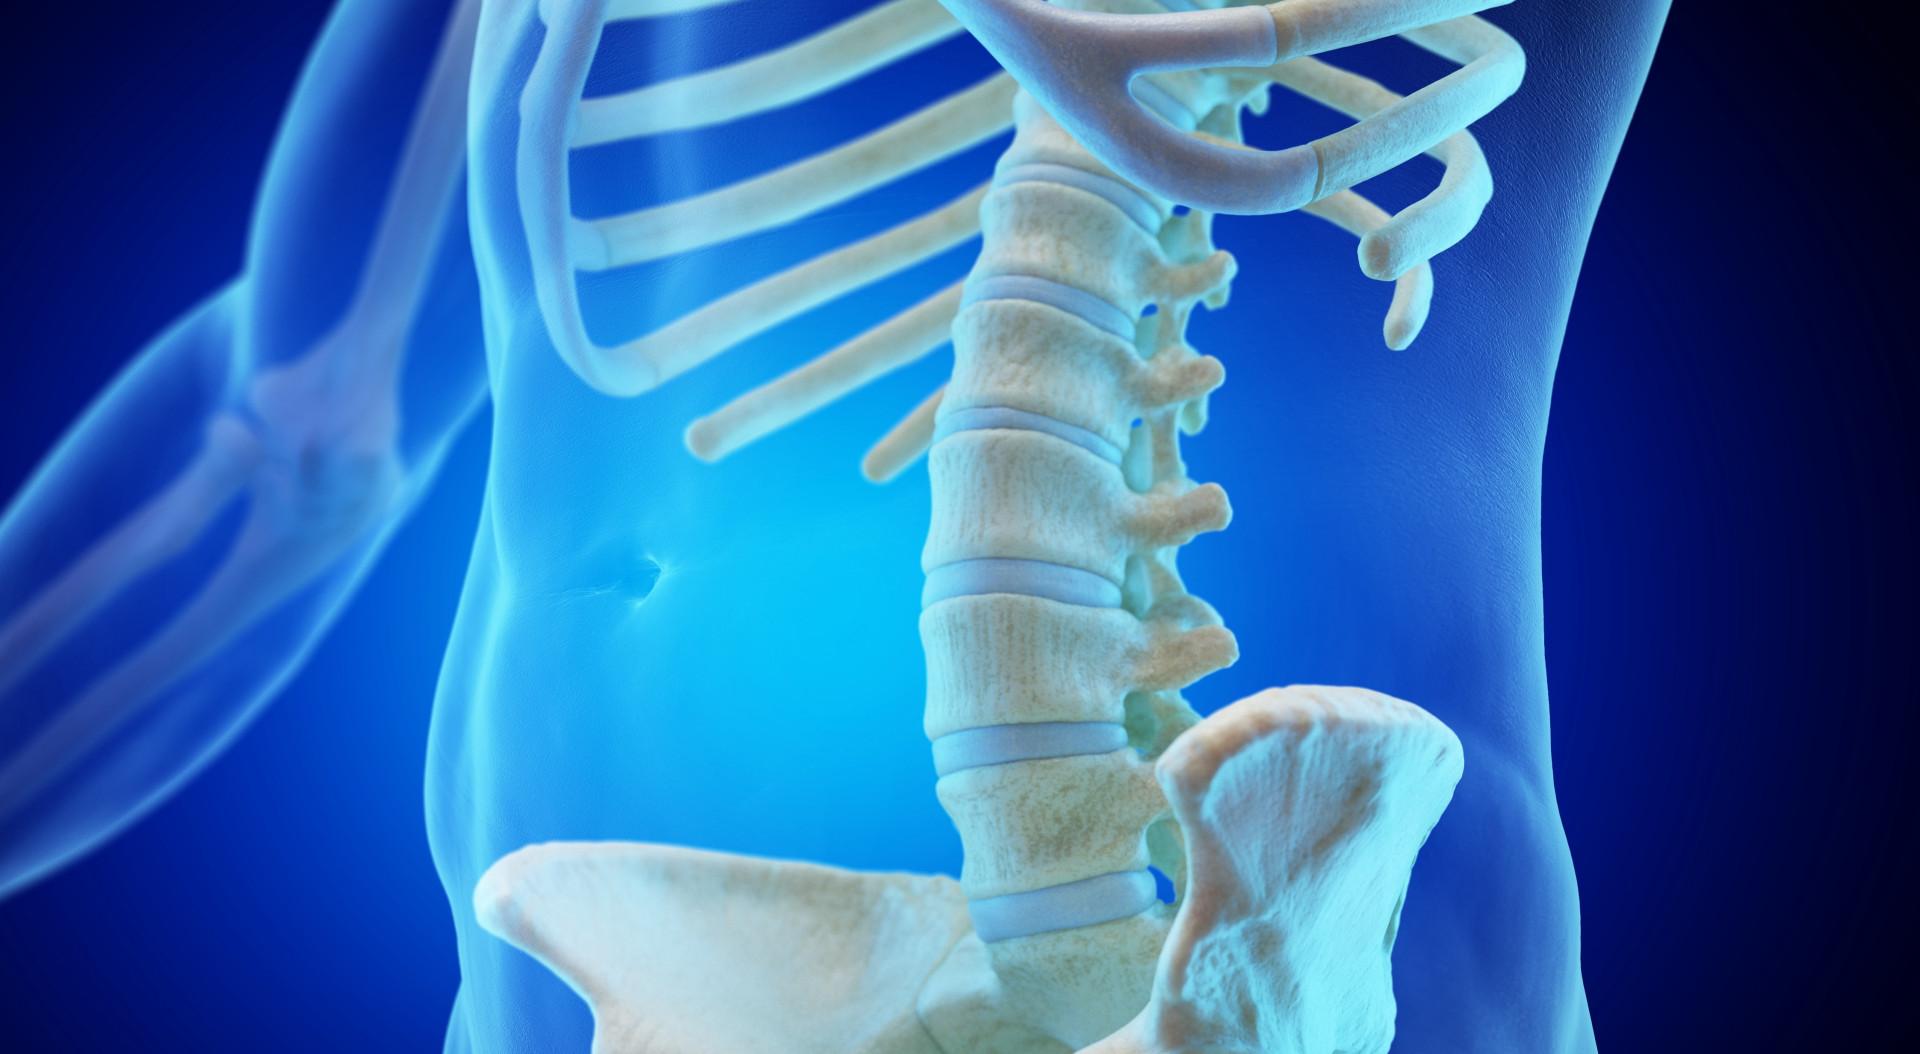 Skeletal image of spine